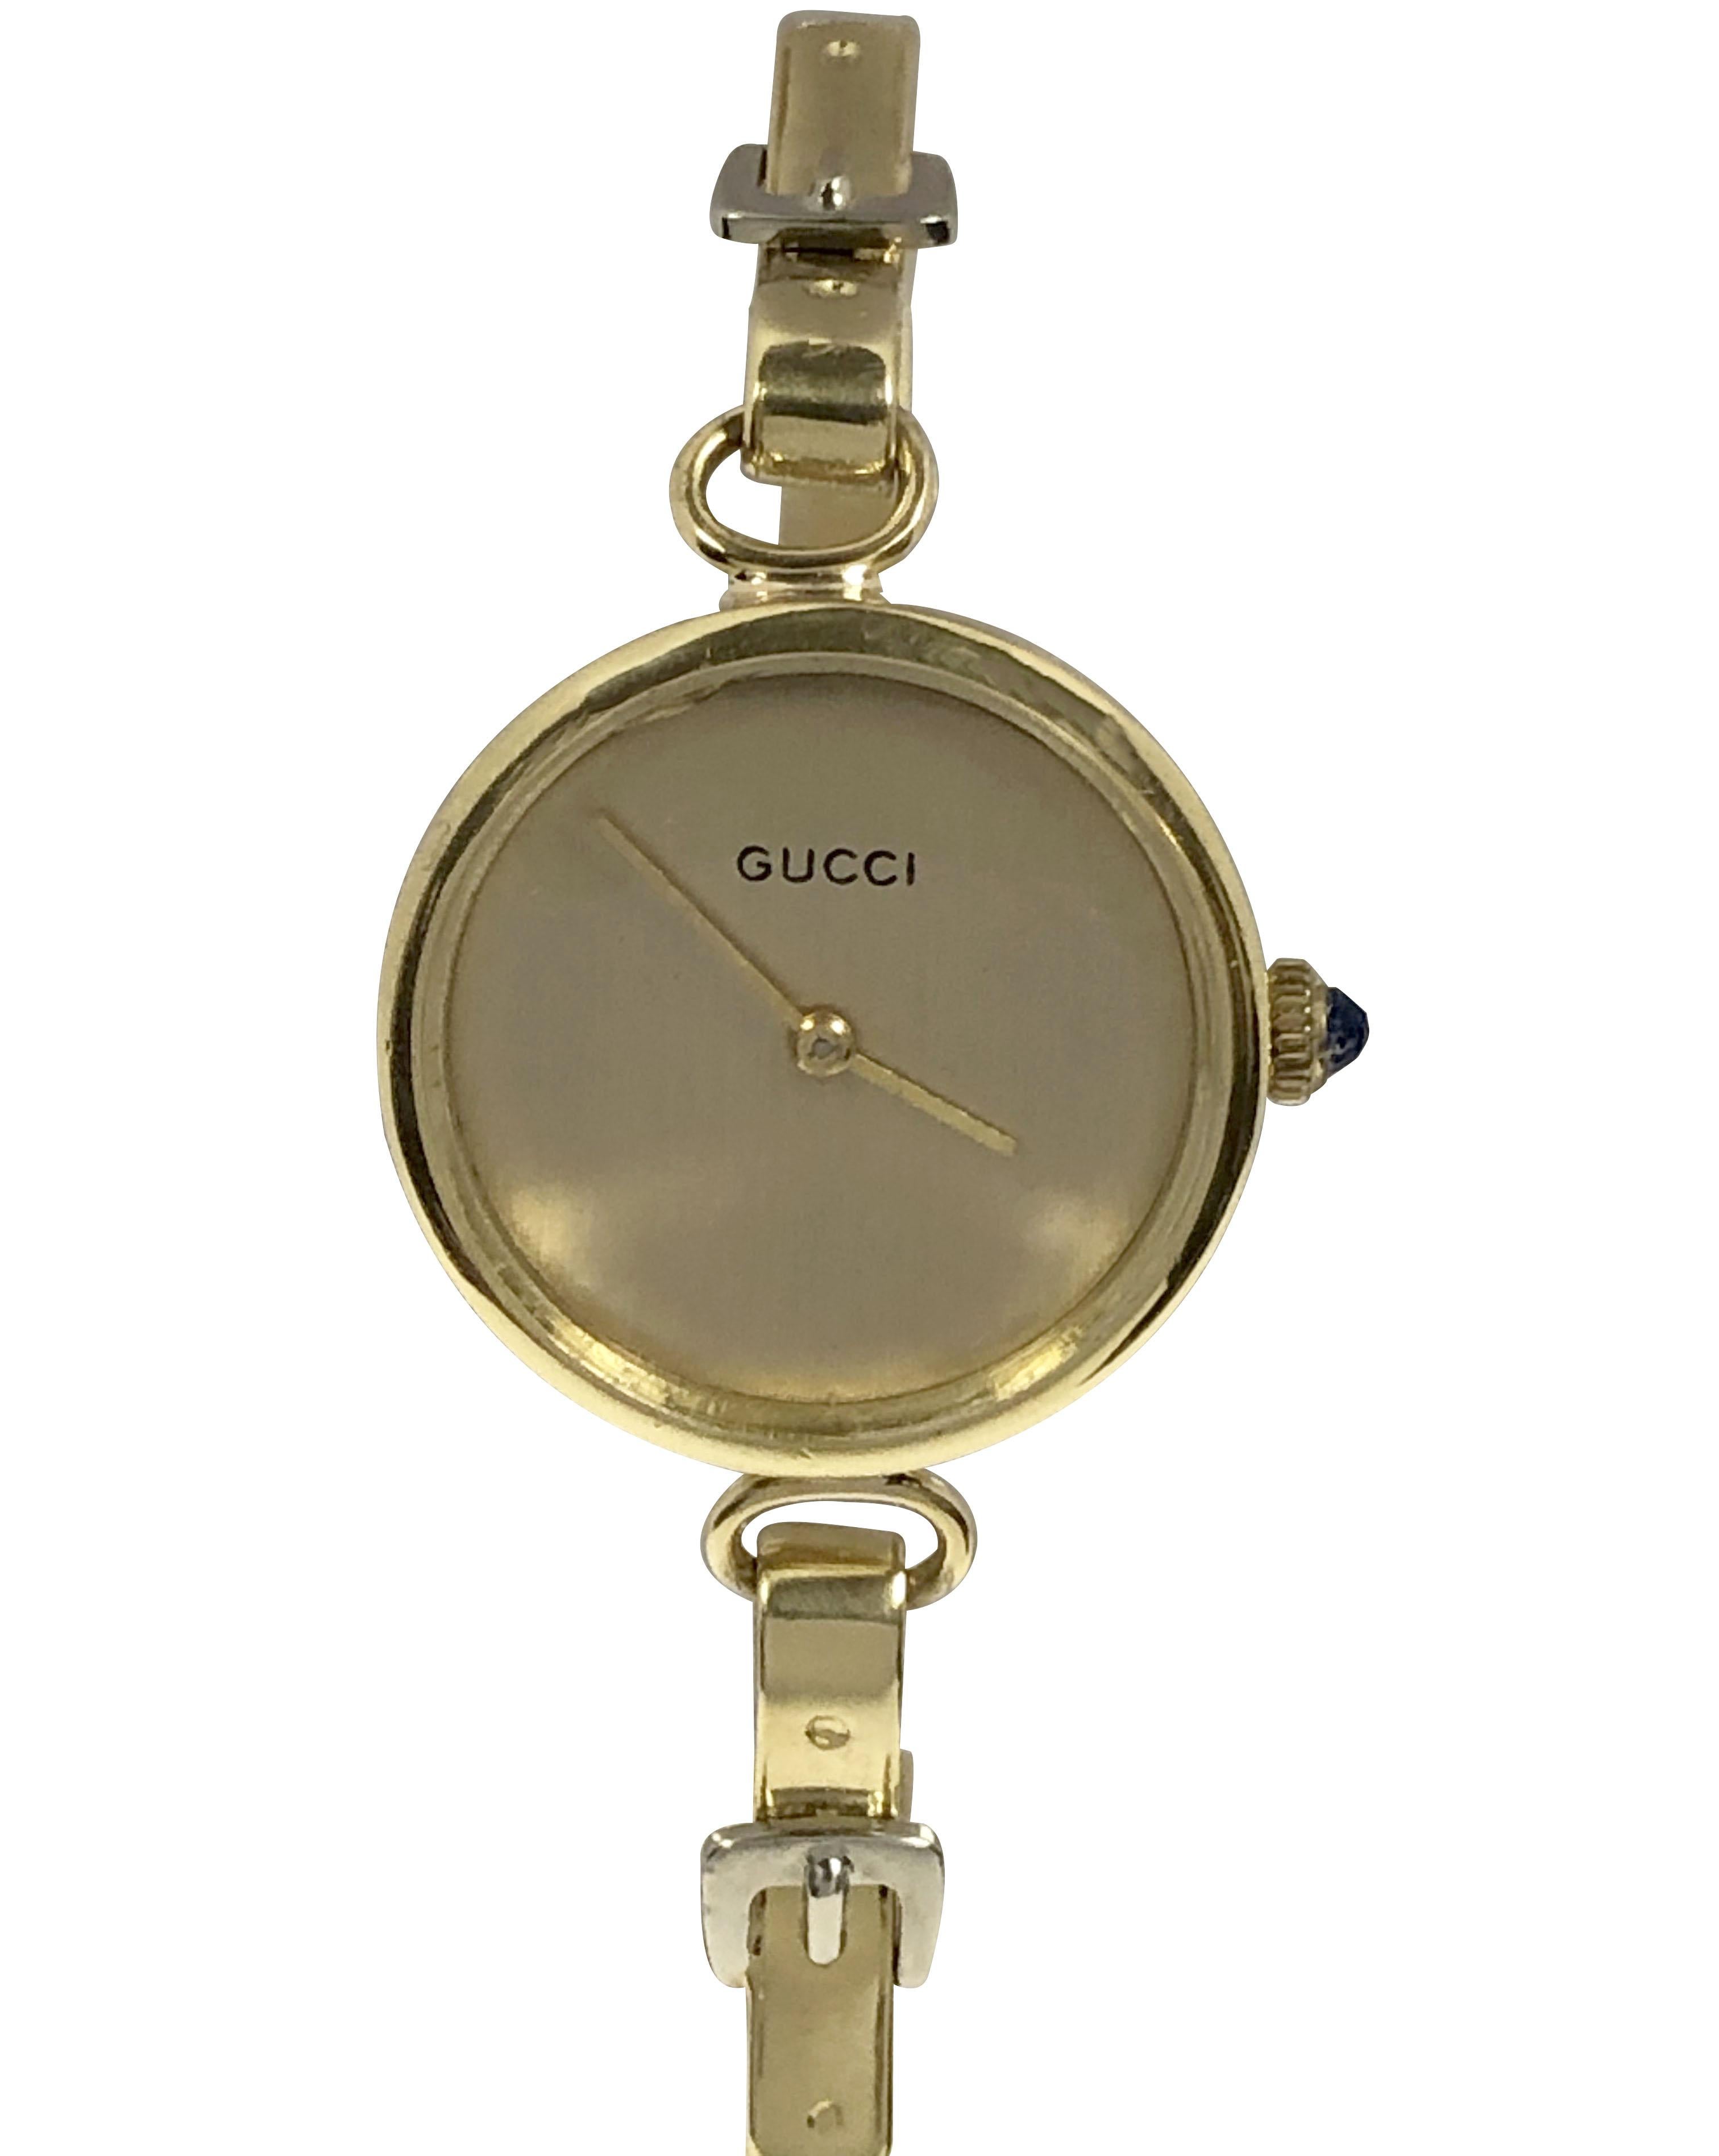 CIRCA 1970er Gucci für den französischen Markt Damen 18k Gelbgold Armband Armbanduhr, 24 M.M. 2 Stück Fall, 17 Jewel mechanische, manuelle Wind Bewegung, Gold Satin-Zifferblatt mit einem Glas Kristall und einer Saphir-Krone. Armreif mit